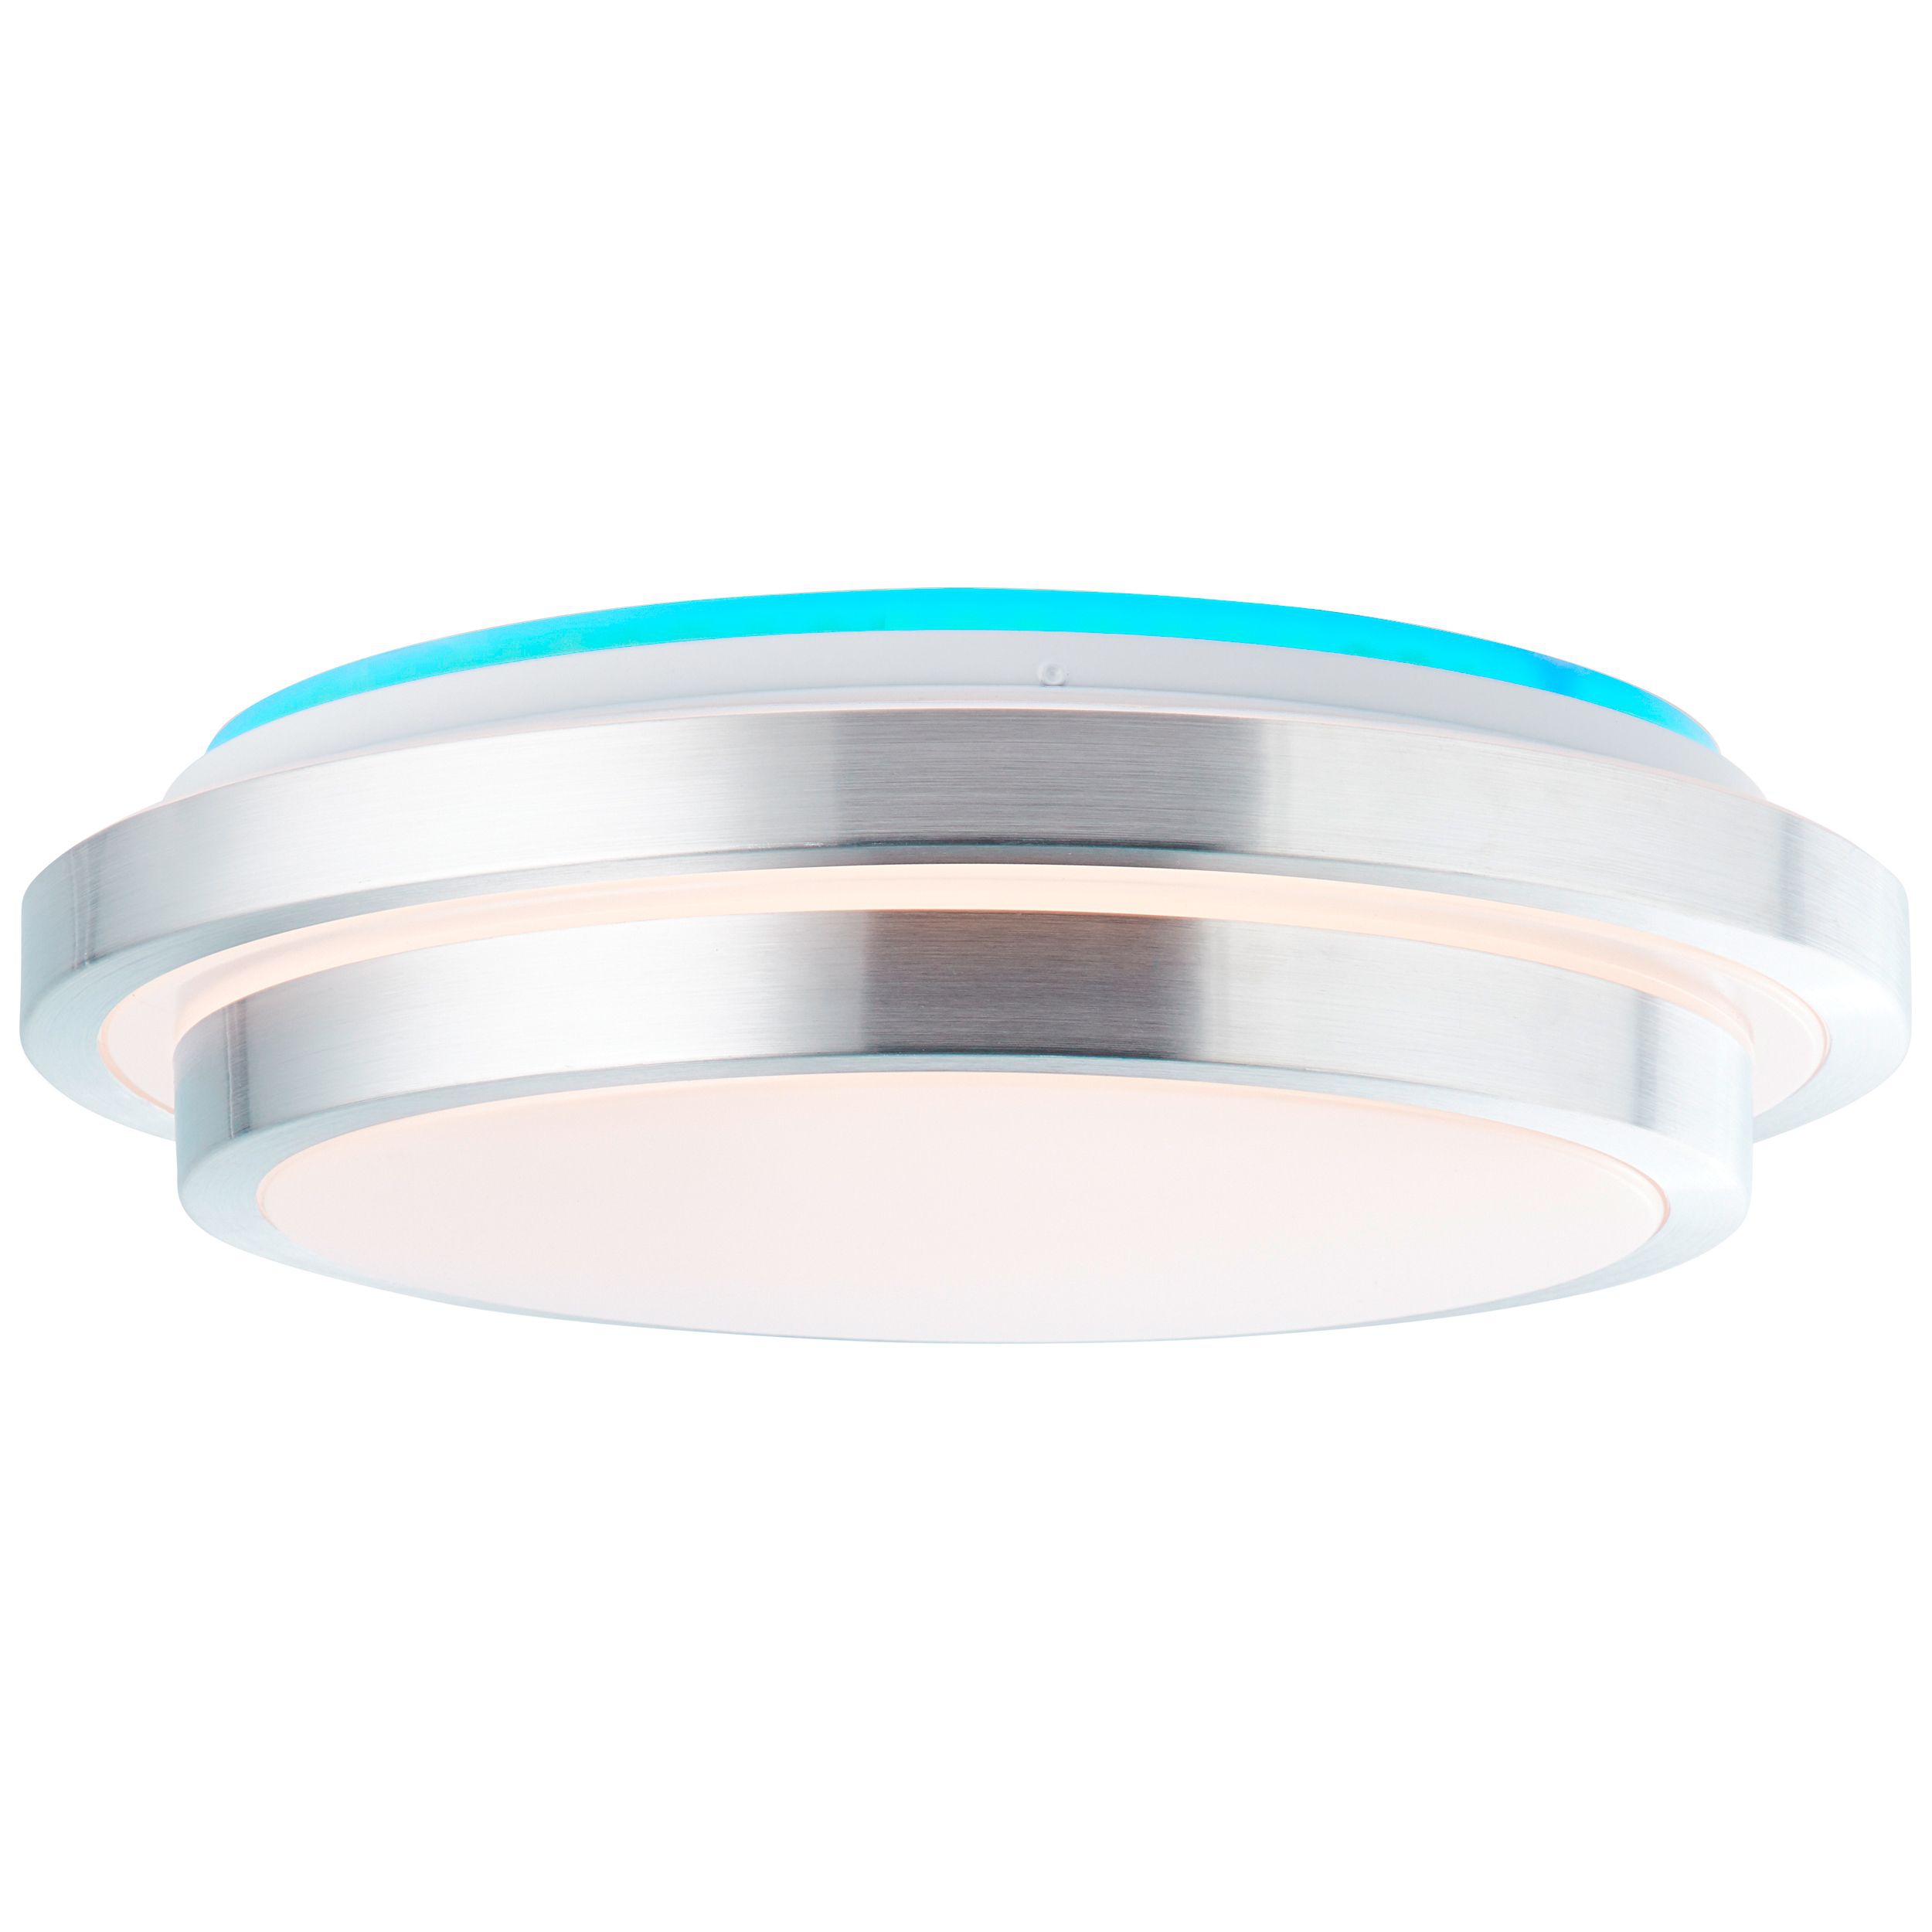 Brilliant LED Deckenleuchte Vilma weiß silber 24W CCT RGB Backlight mit Fernbedienung Ø41cm